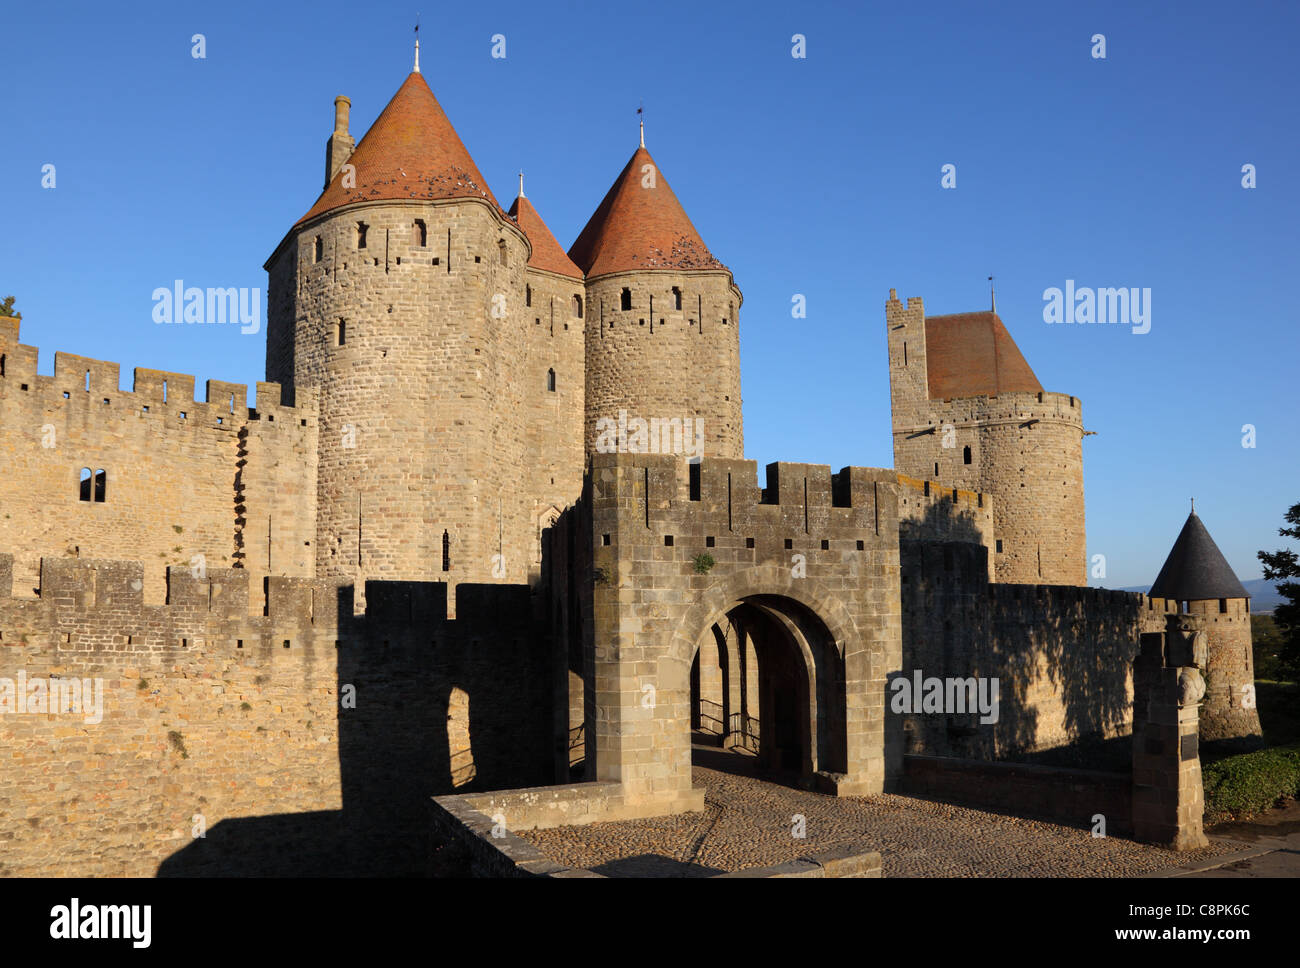 Porte fortifiée de la ville médiévale de Carcassonne, France Photo Stock -  Alamy